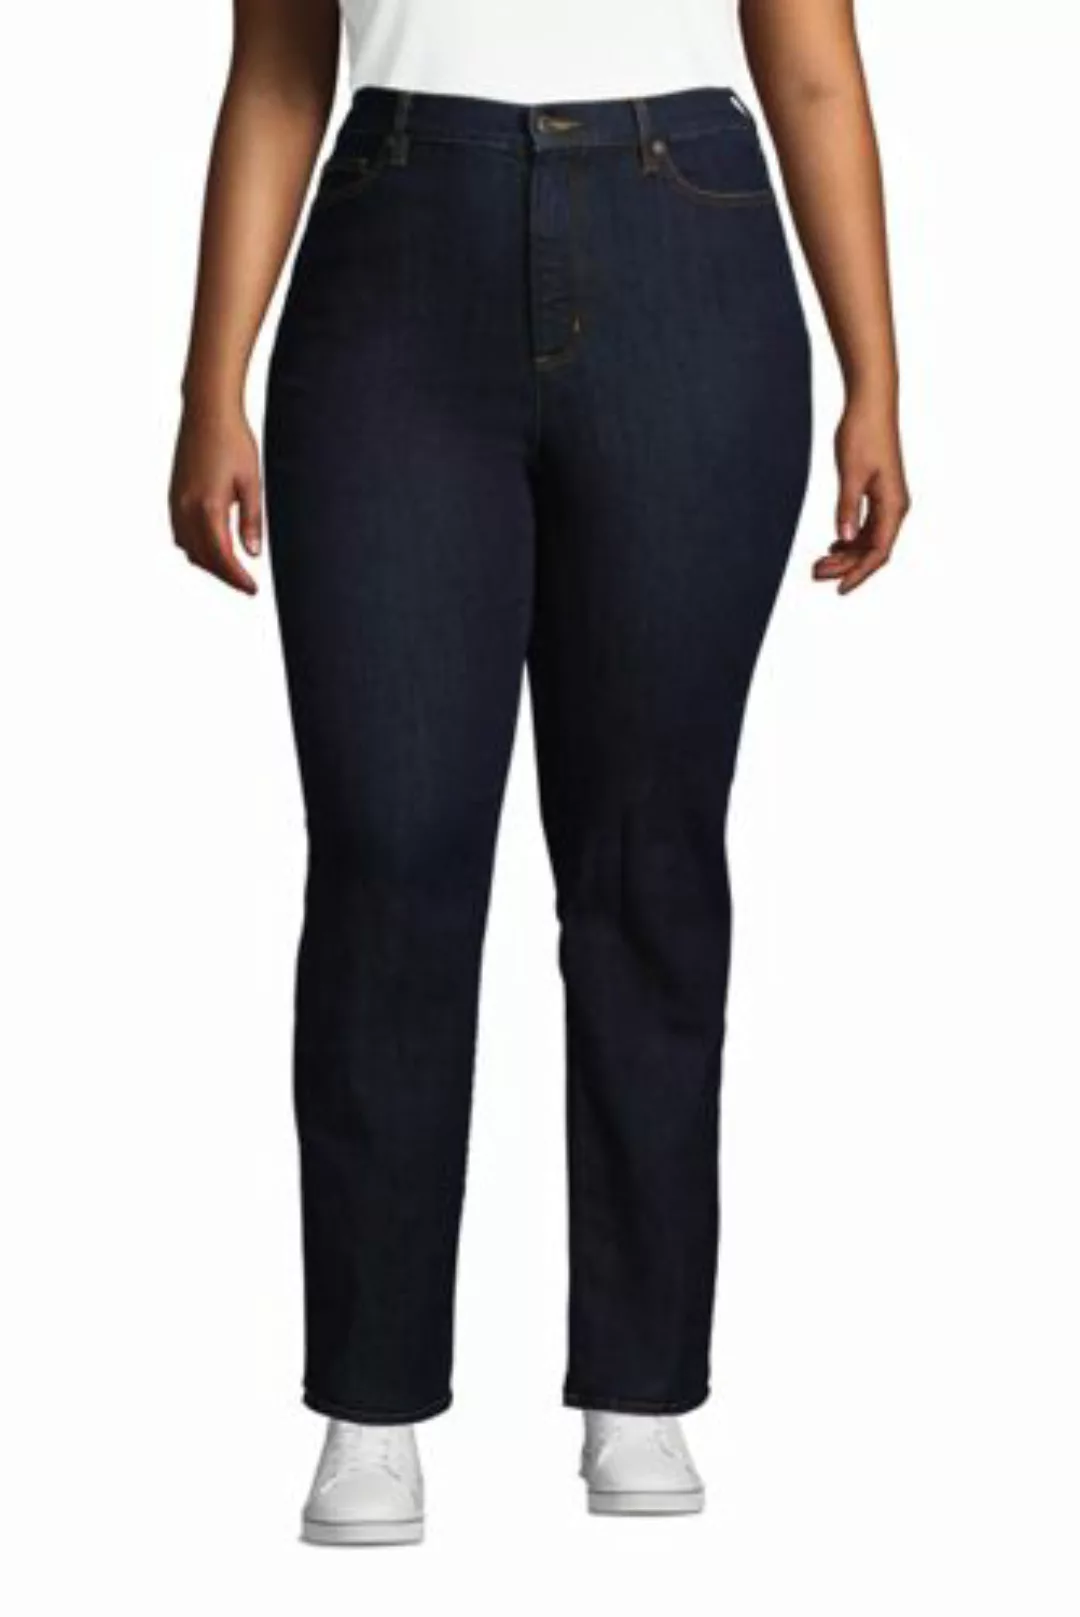 Straight Fit Öko Jeans High Waist in großen Größen, Damen, Größe: 54 28 Plu günstig online kaufen